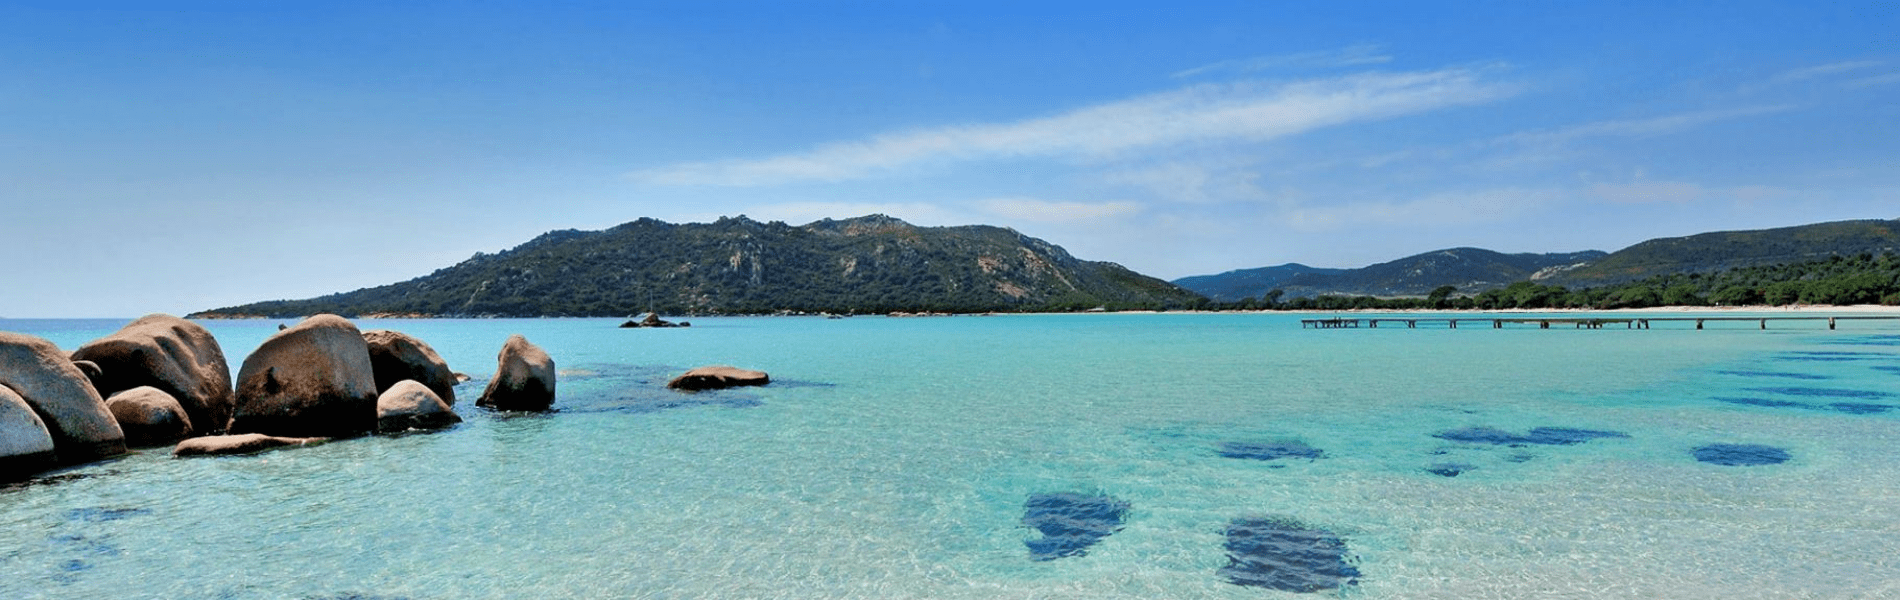 Pianrellu - Corse